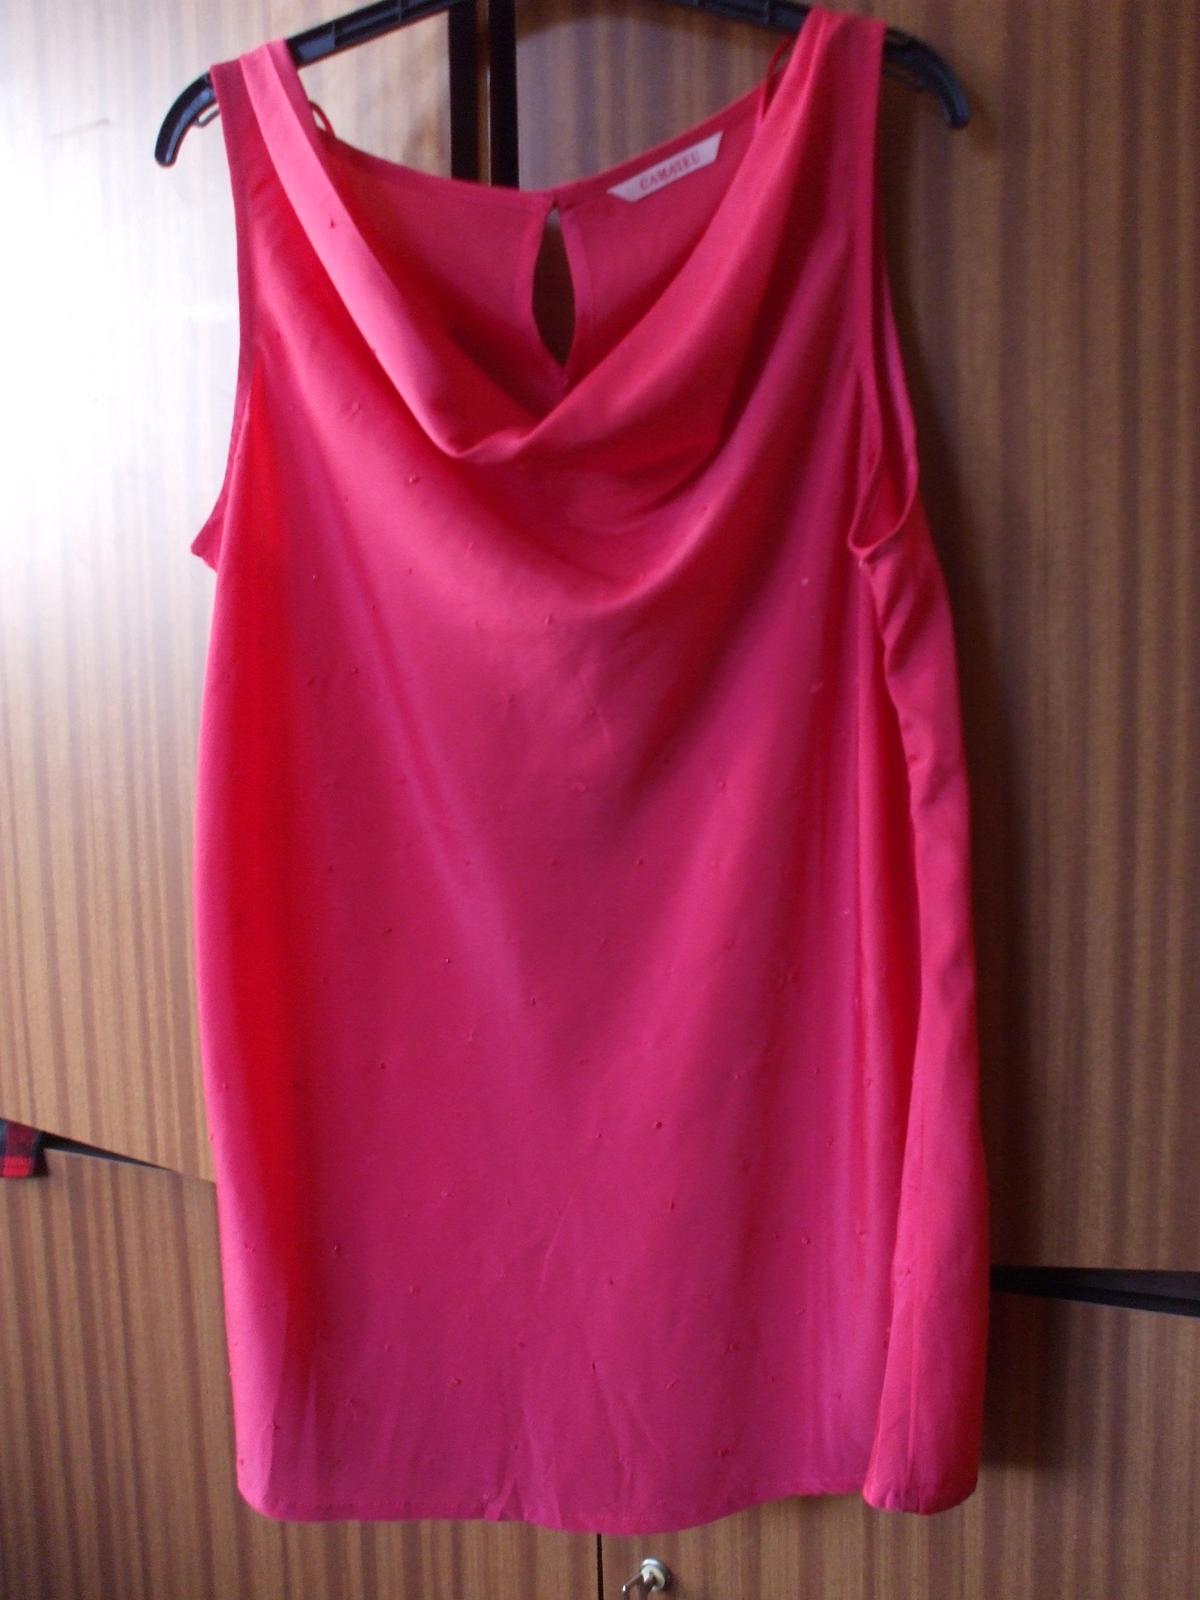 Růžová halenka Camaieu s výstřihem tzv. vodou - Obrázek č. 1